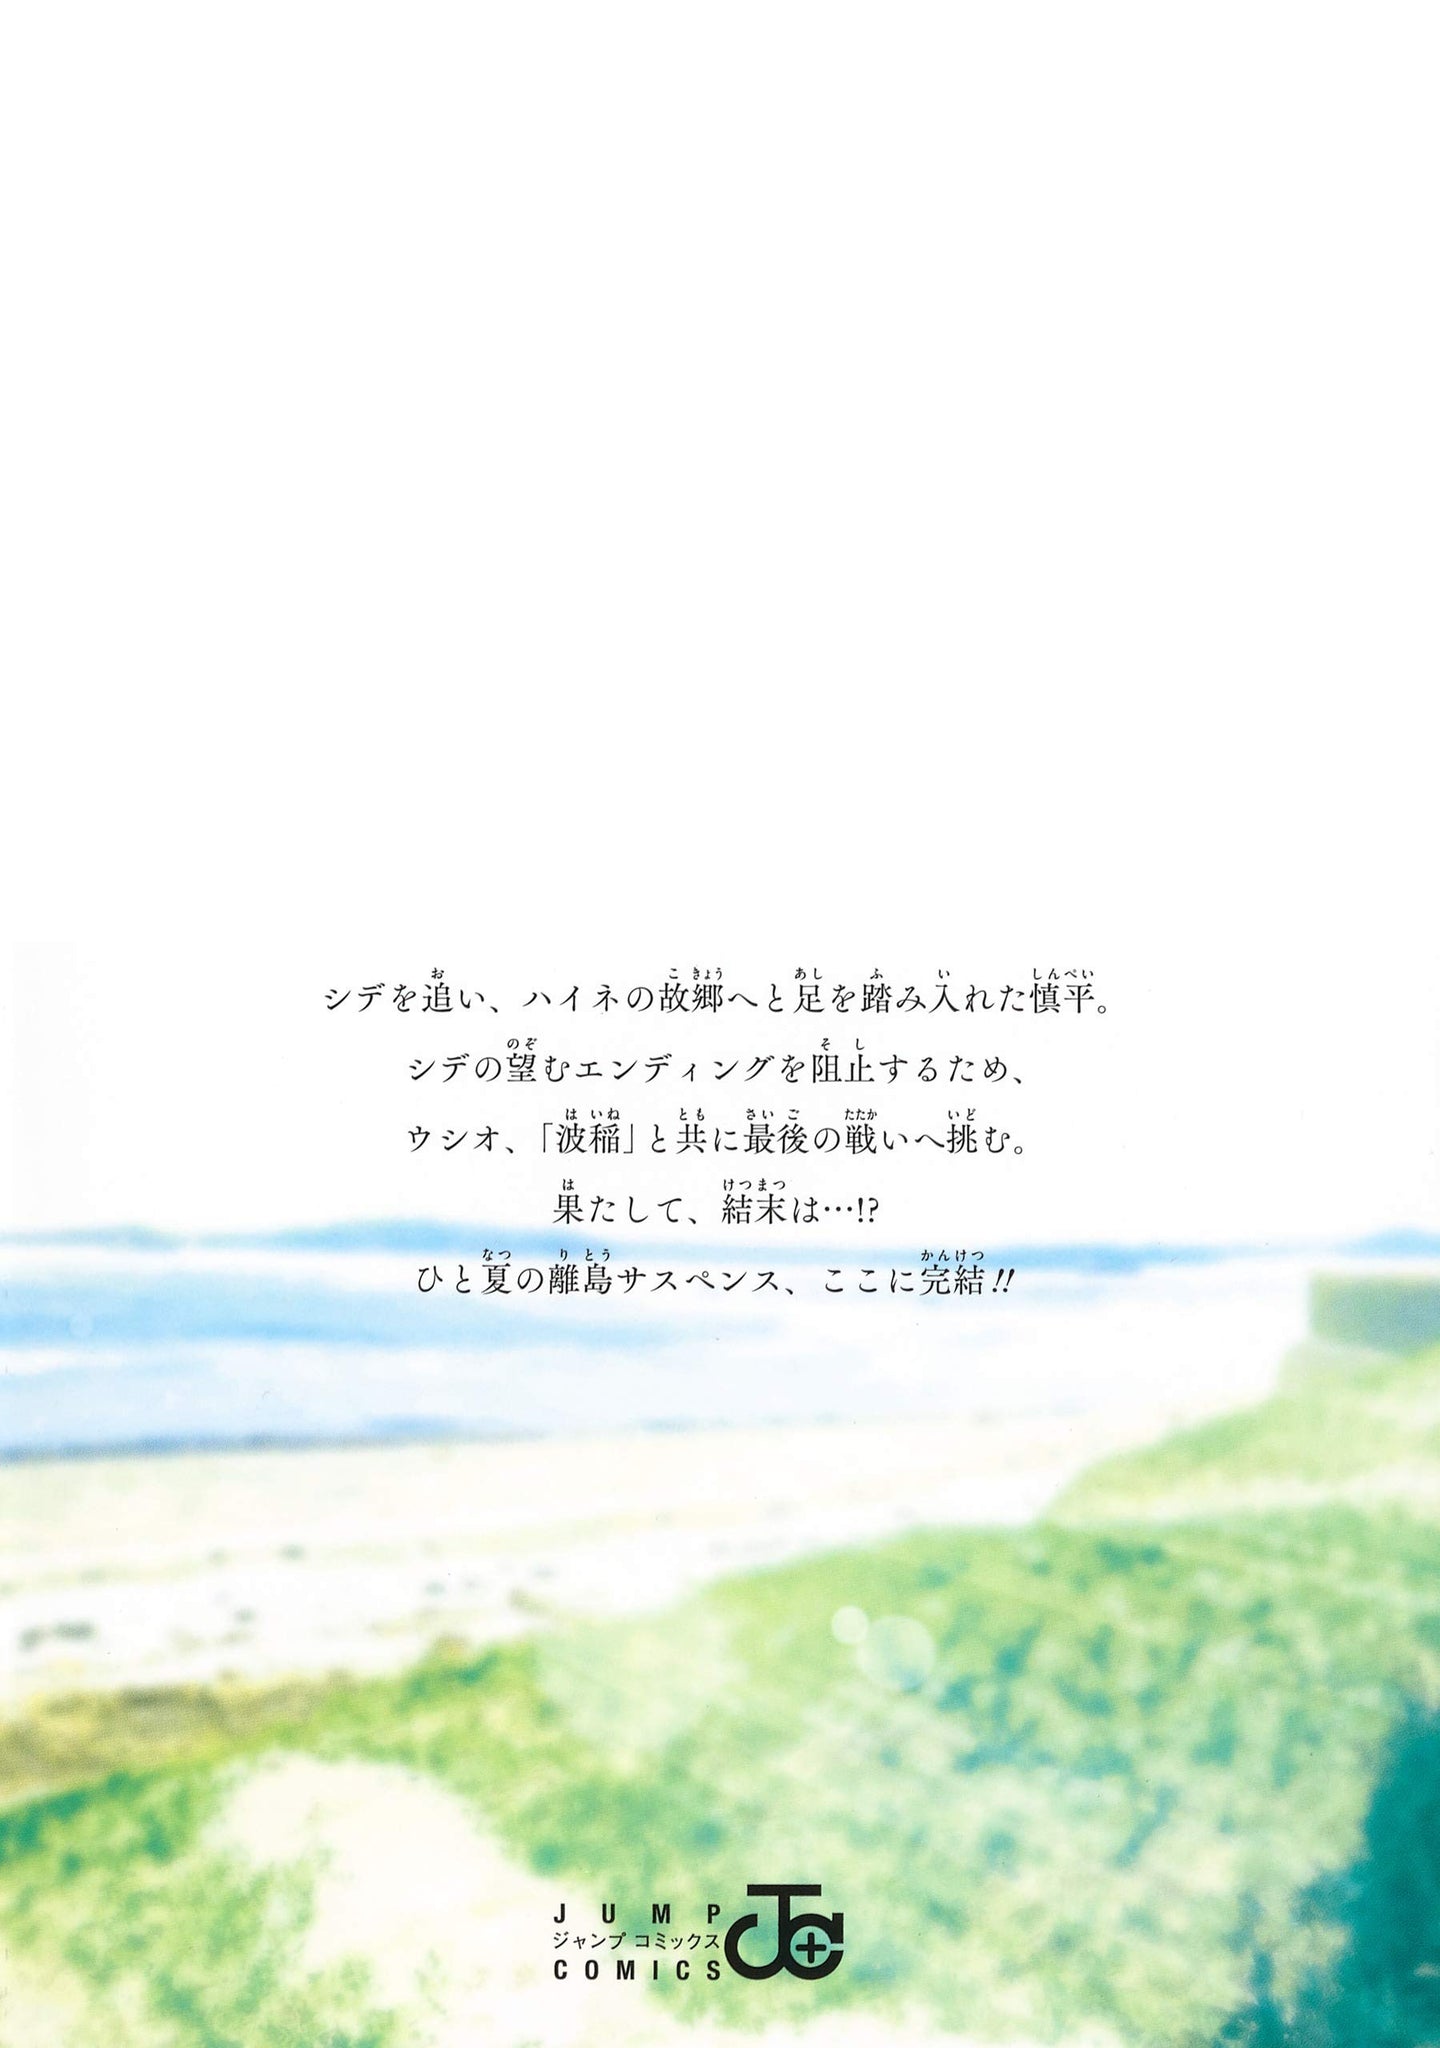 Summer Time Rendering (Summertime Render) 2026 Novelist Ryunosuke